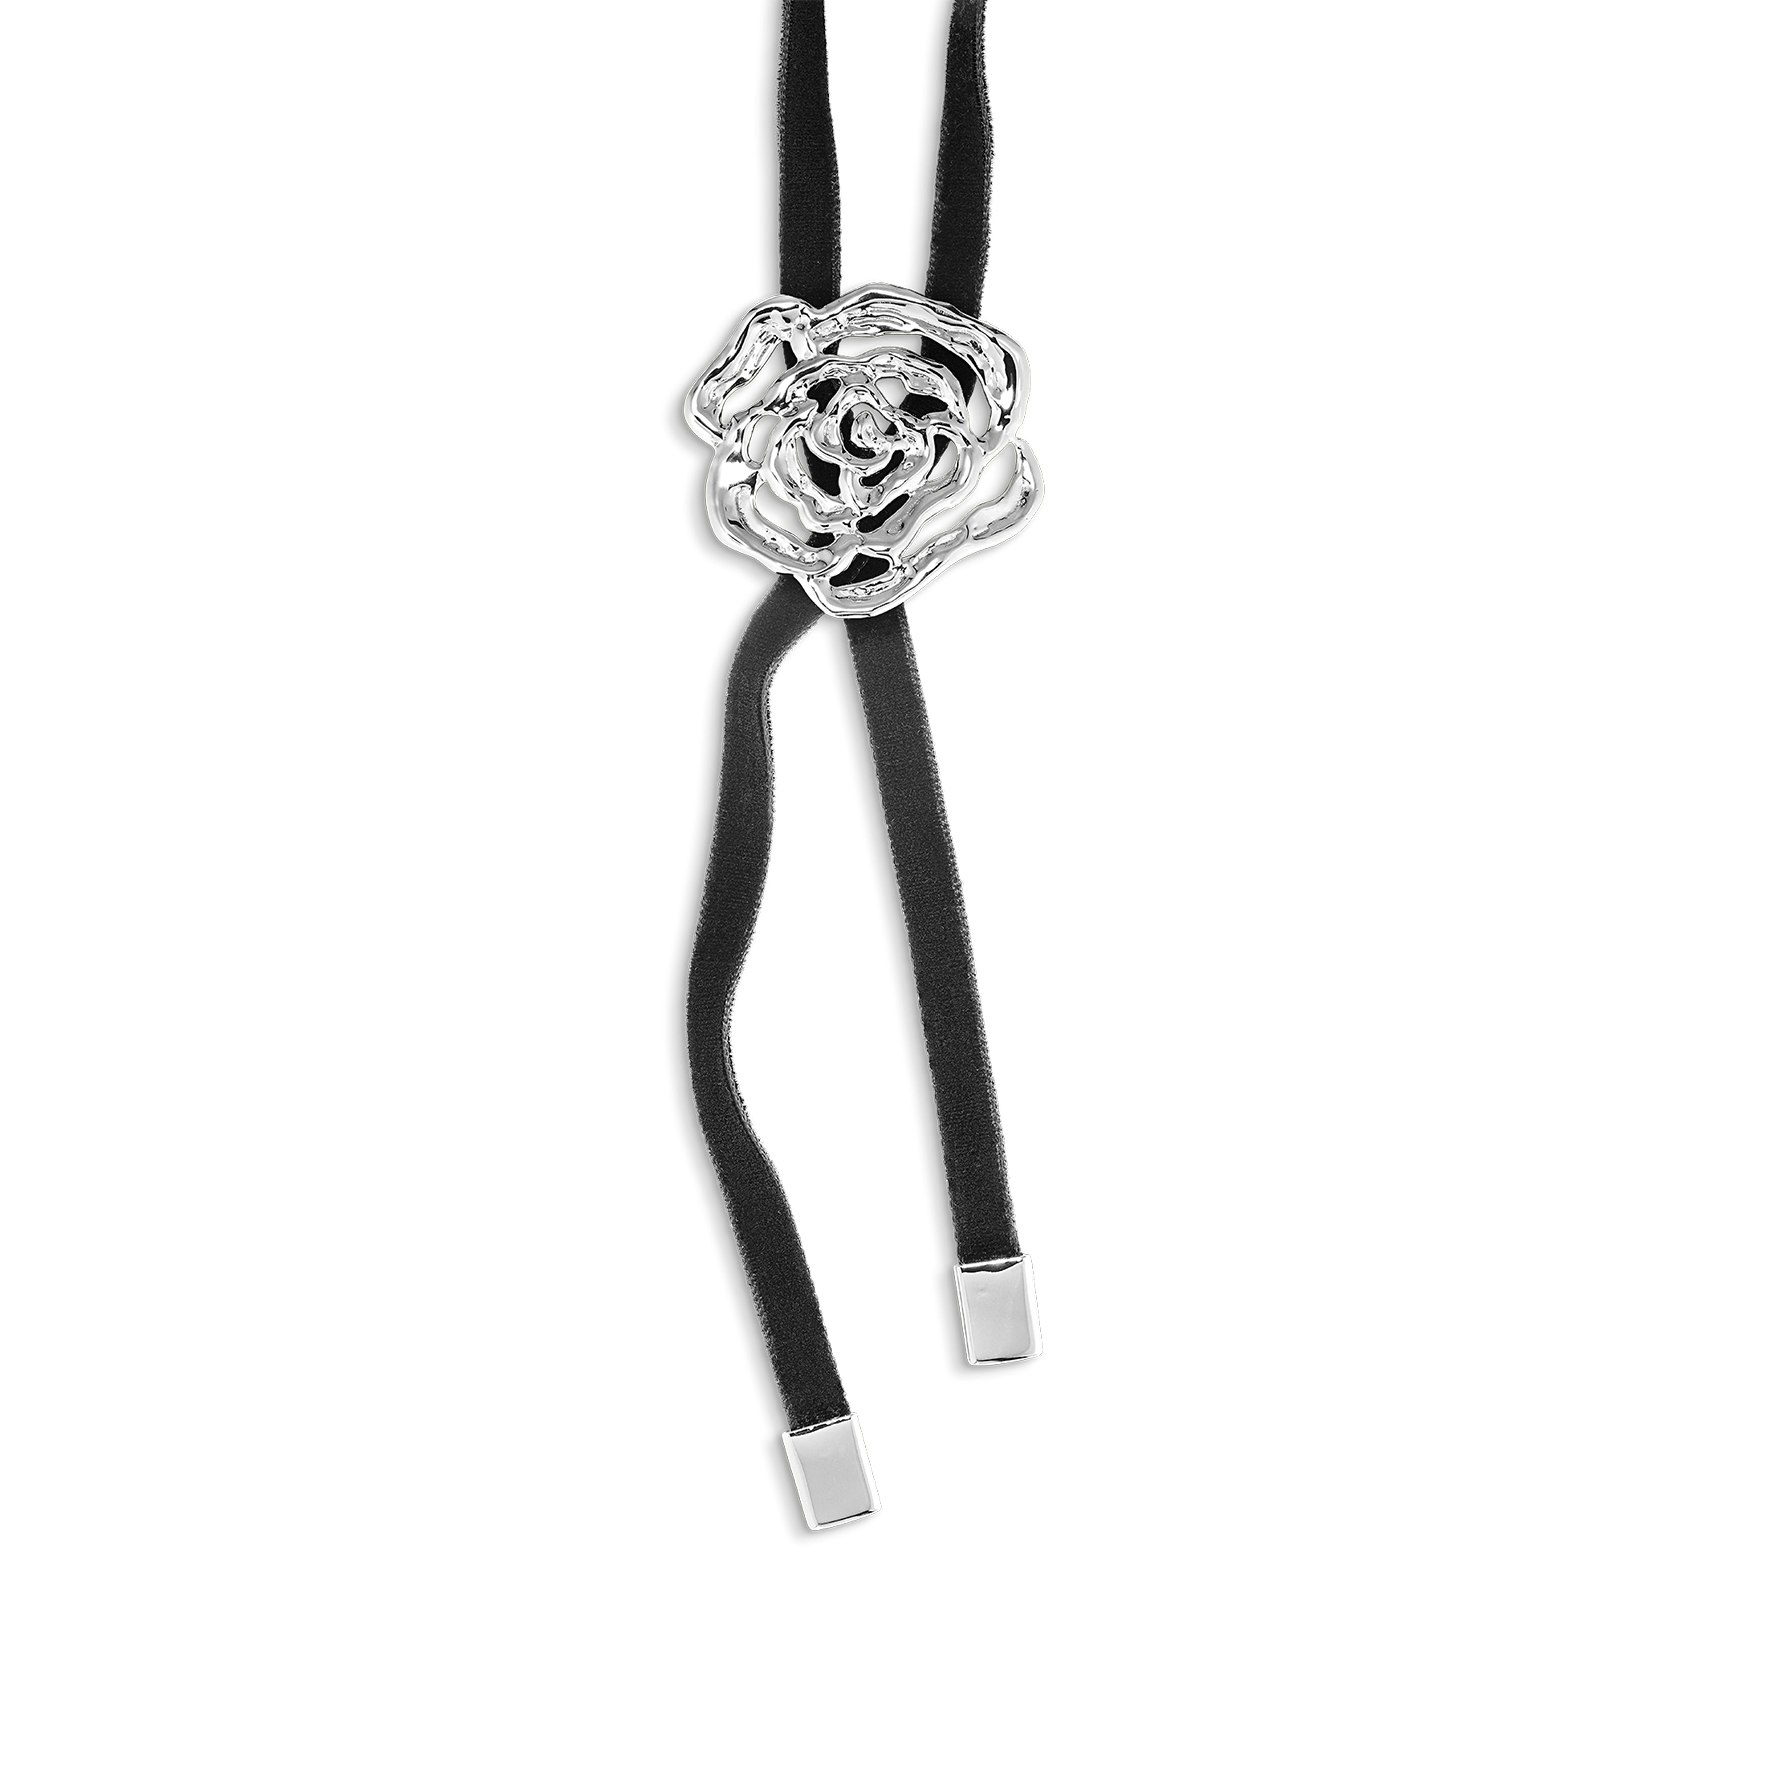 Rosle Bolo Tie Necklace fra Jane Kønig i Sølv Sterling 925